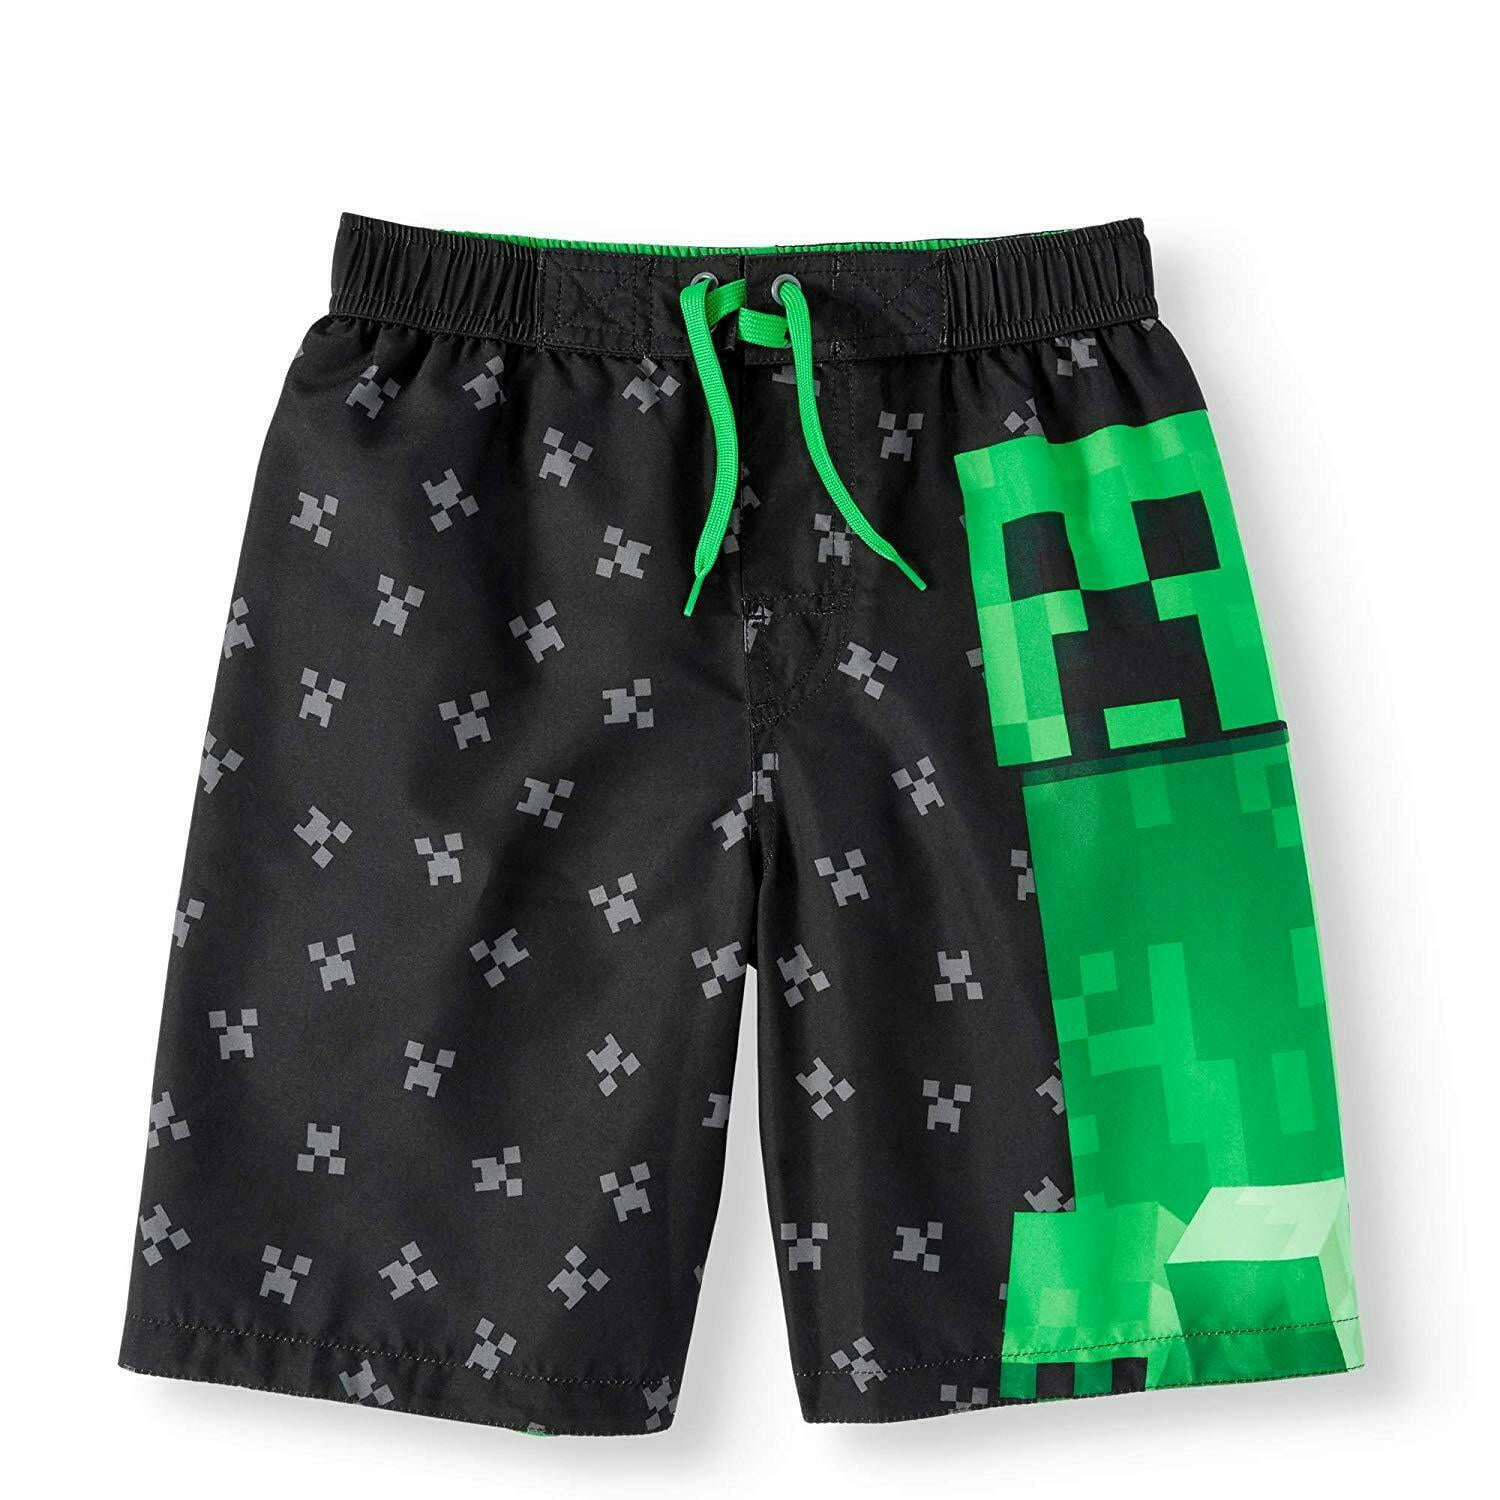 Minecraft Swim Trunks Shorts Boy Size 10/12 - Walmart.com